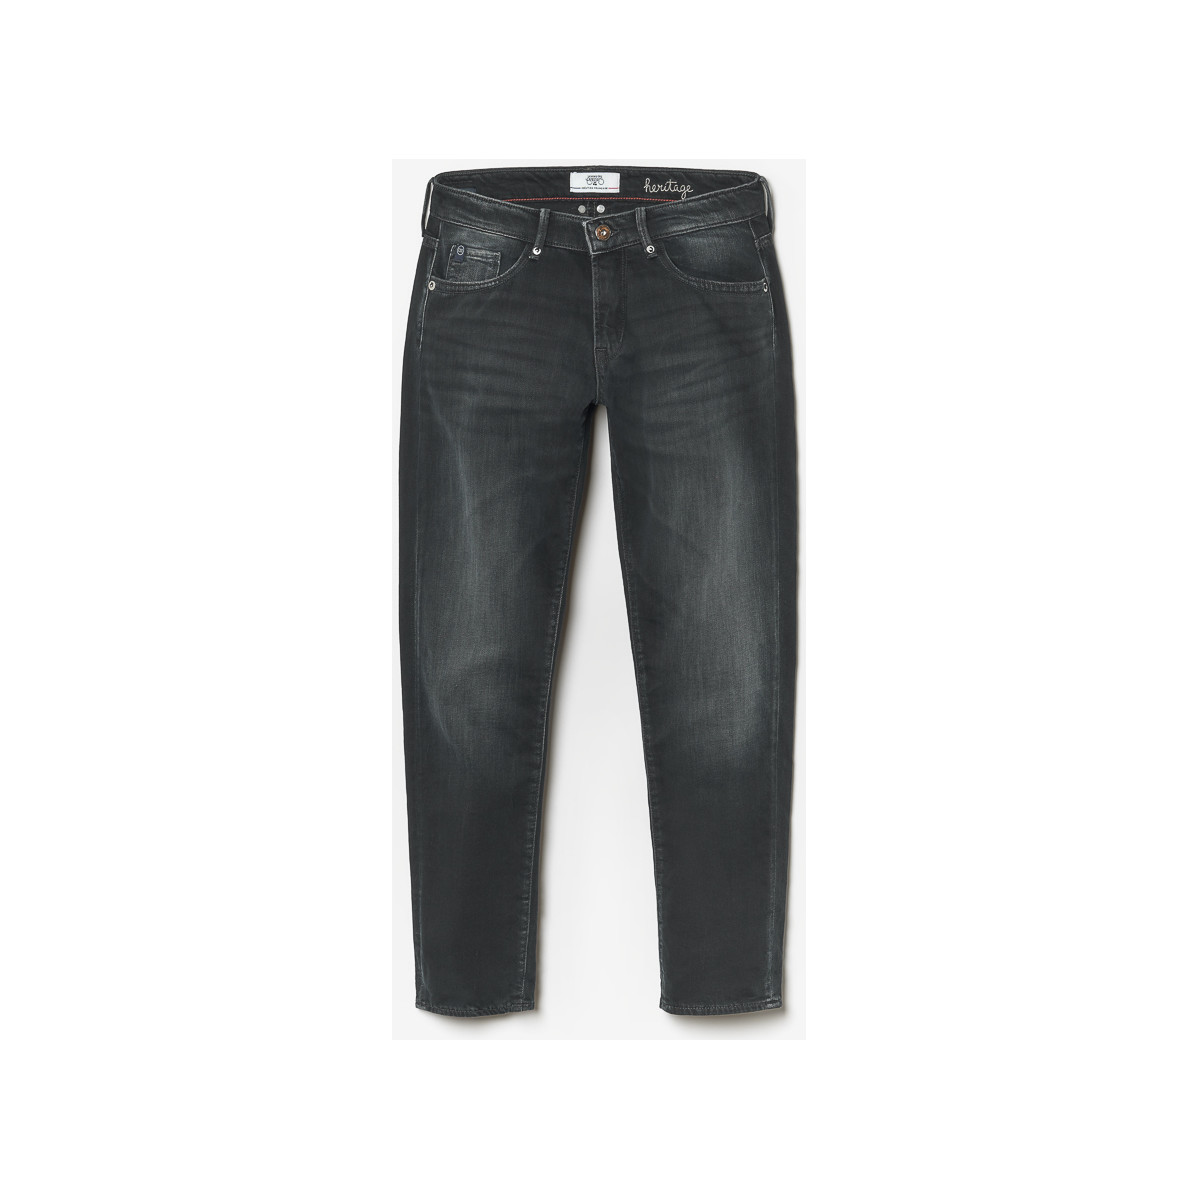 Le Temps des Cerises Bleu Sea 200/43 boyfit jeans bleu-noir sGPjptiR